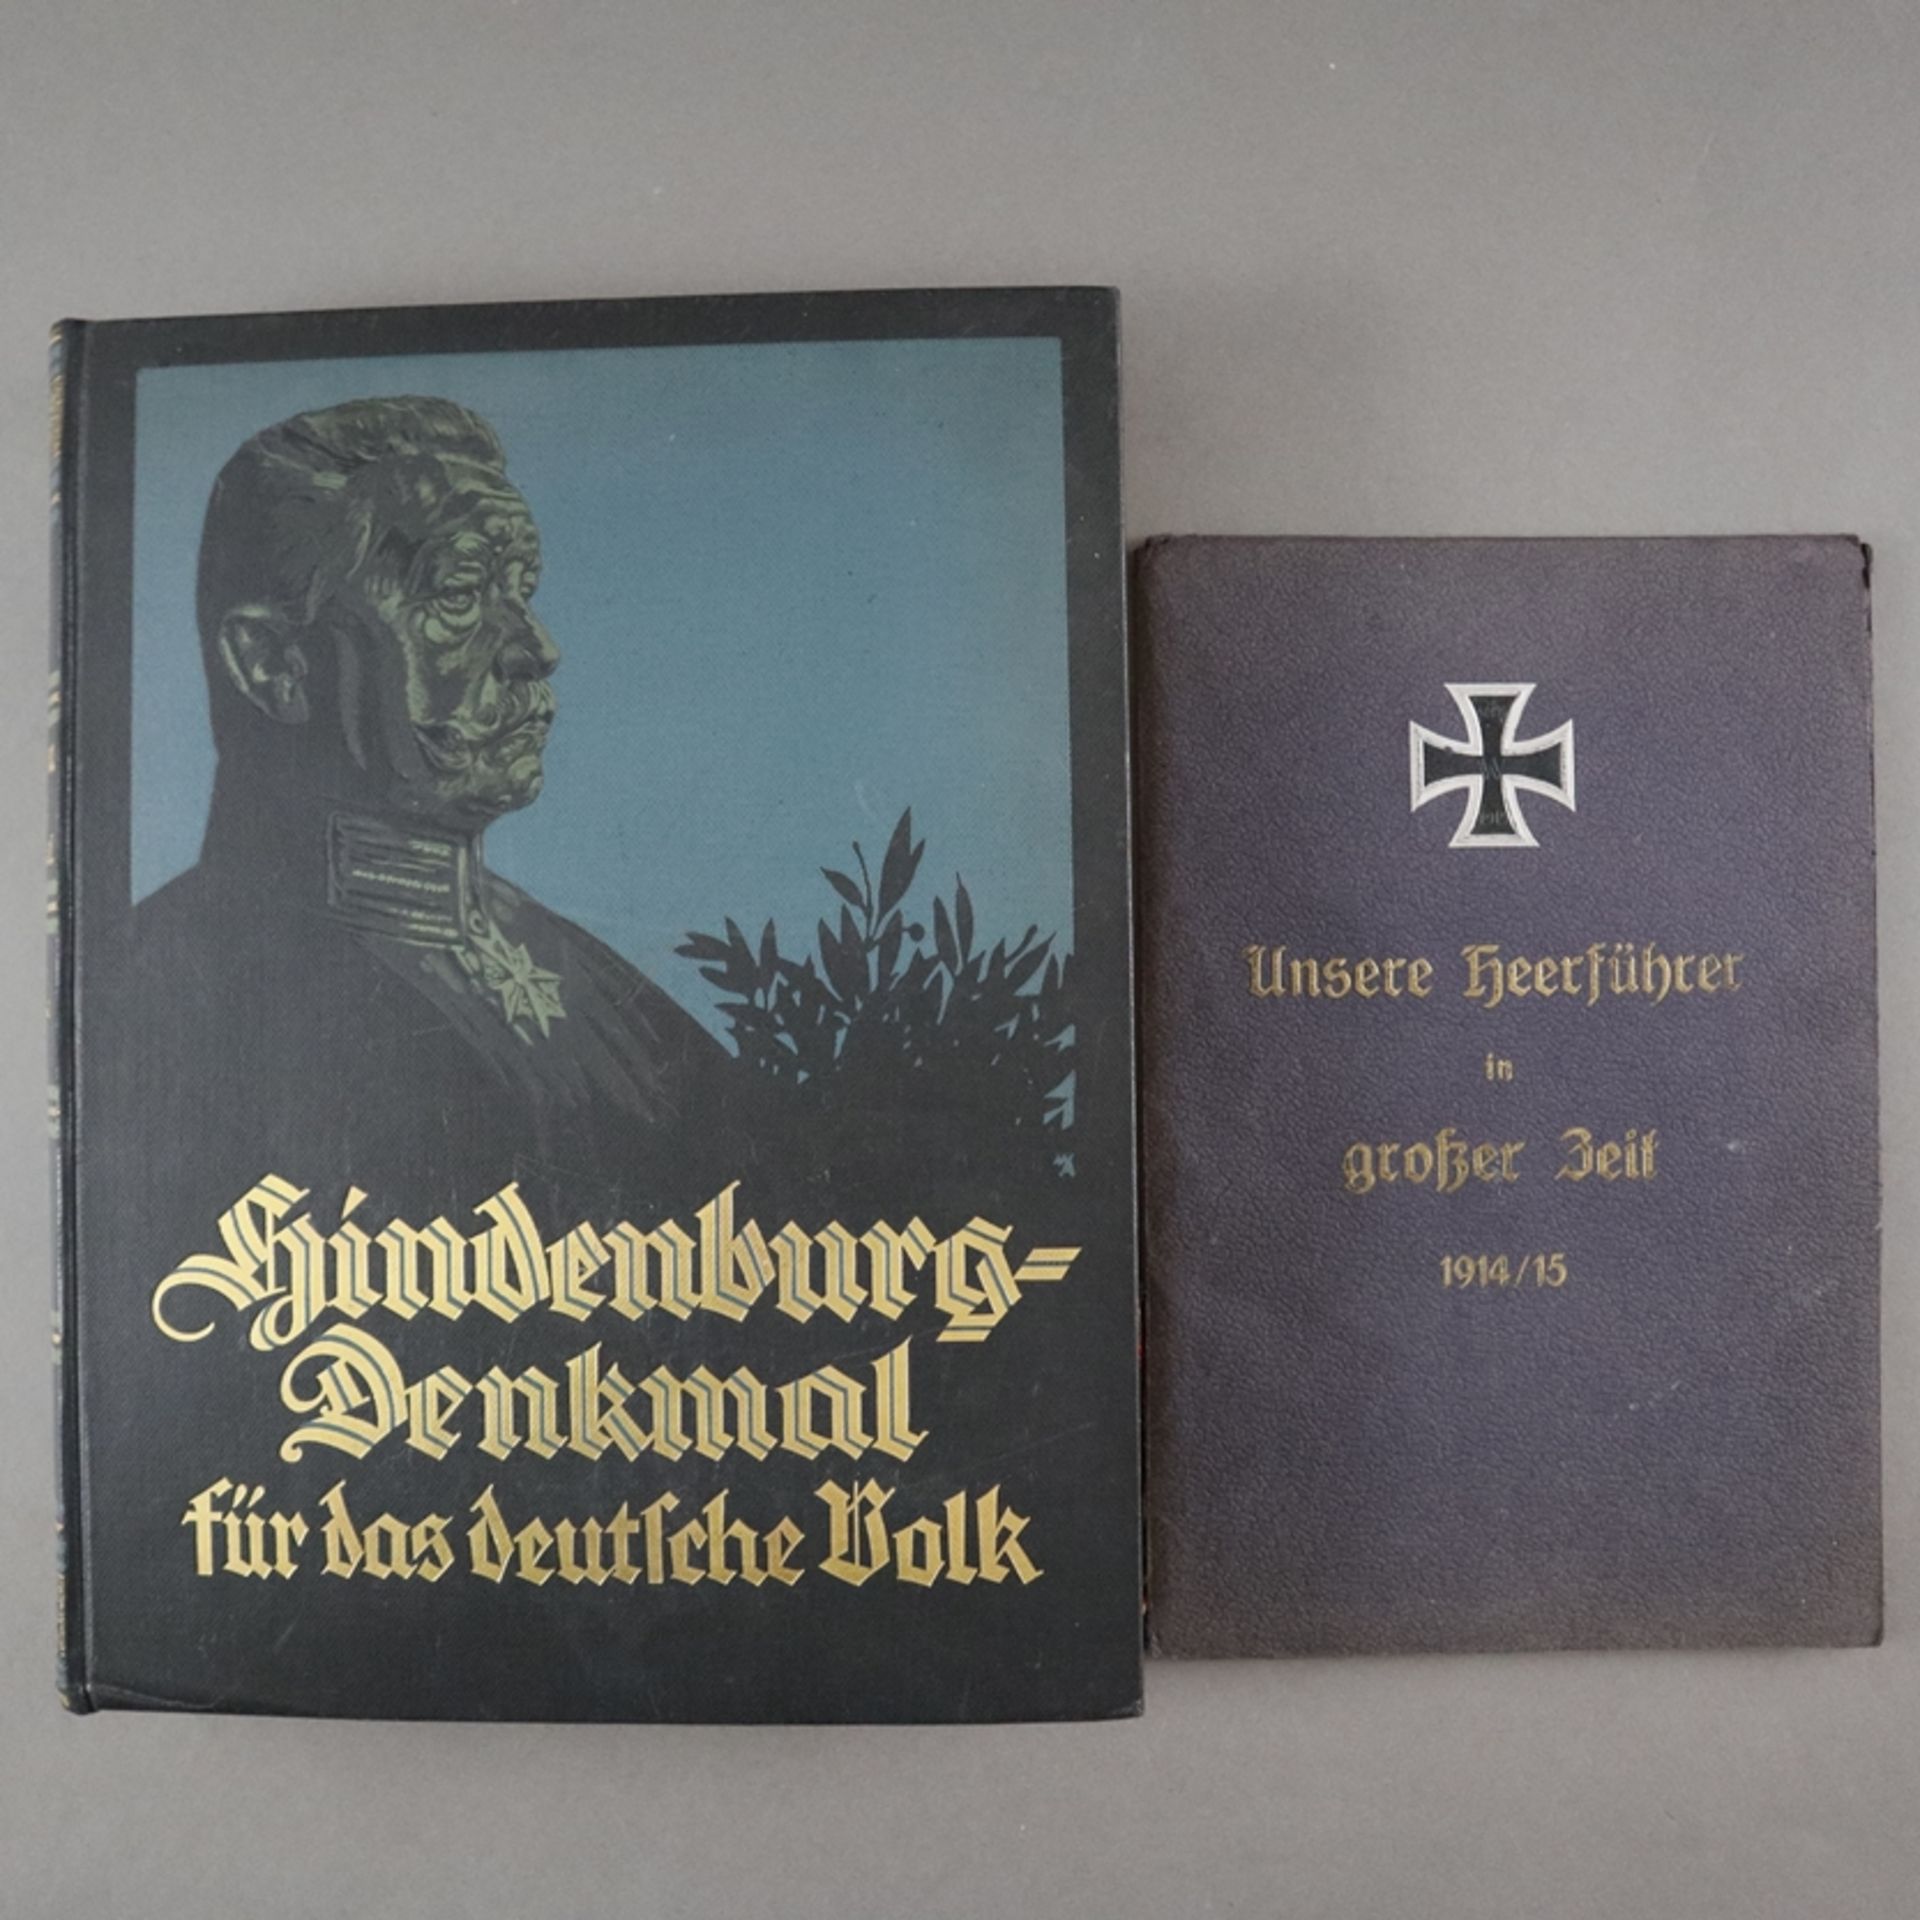 "Unsere Heerführer in großer Zeit 1914/15" - Mappe mit Portraits Kaiser Wilhelms II. und acht Gener